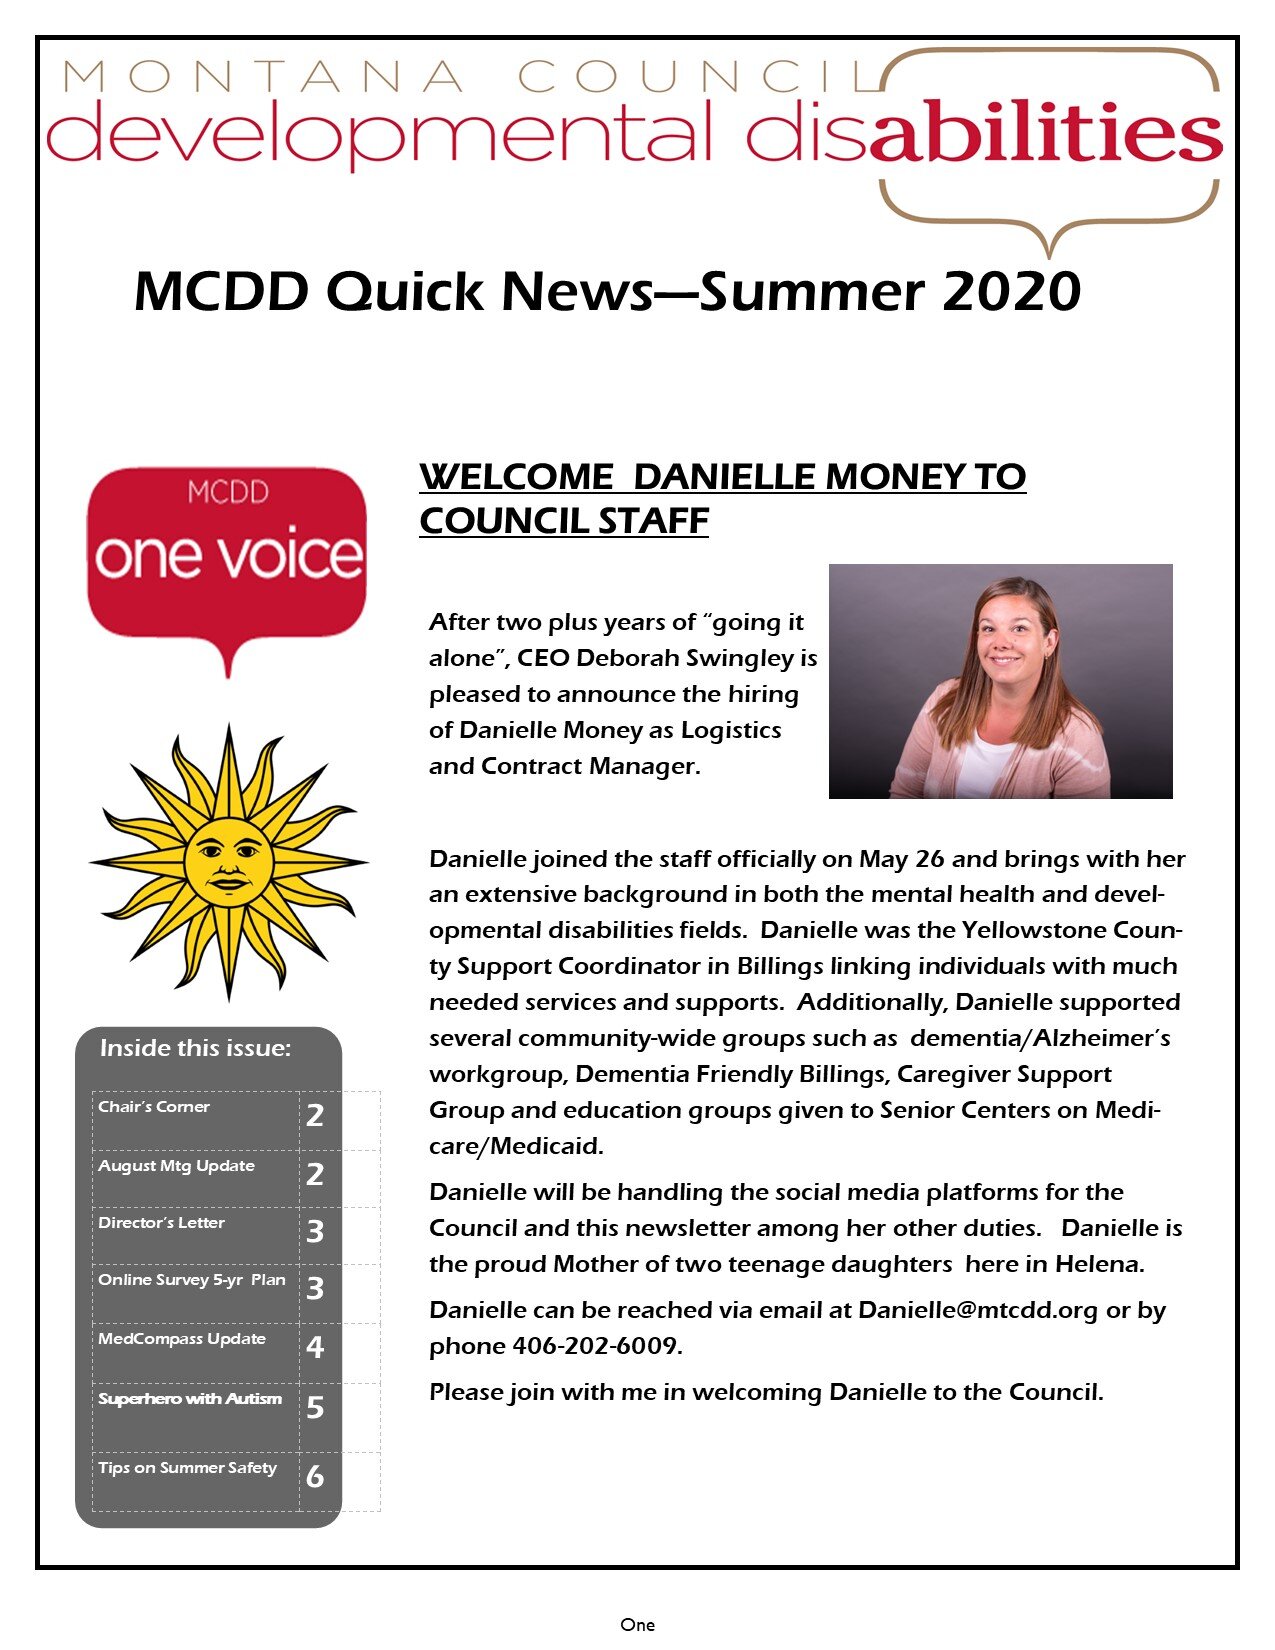 MCDD Quick News Summer 2020.jpg